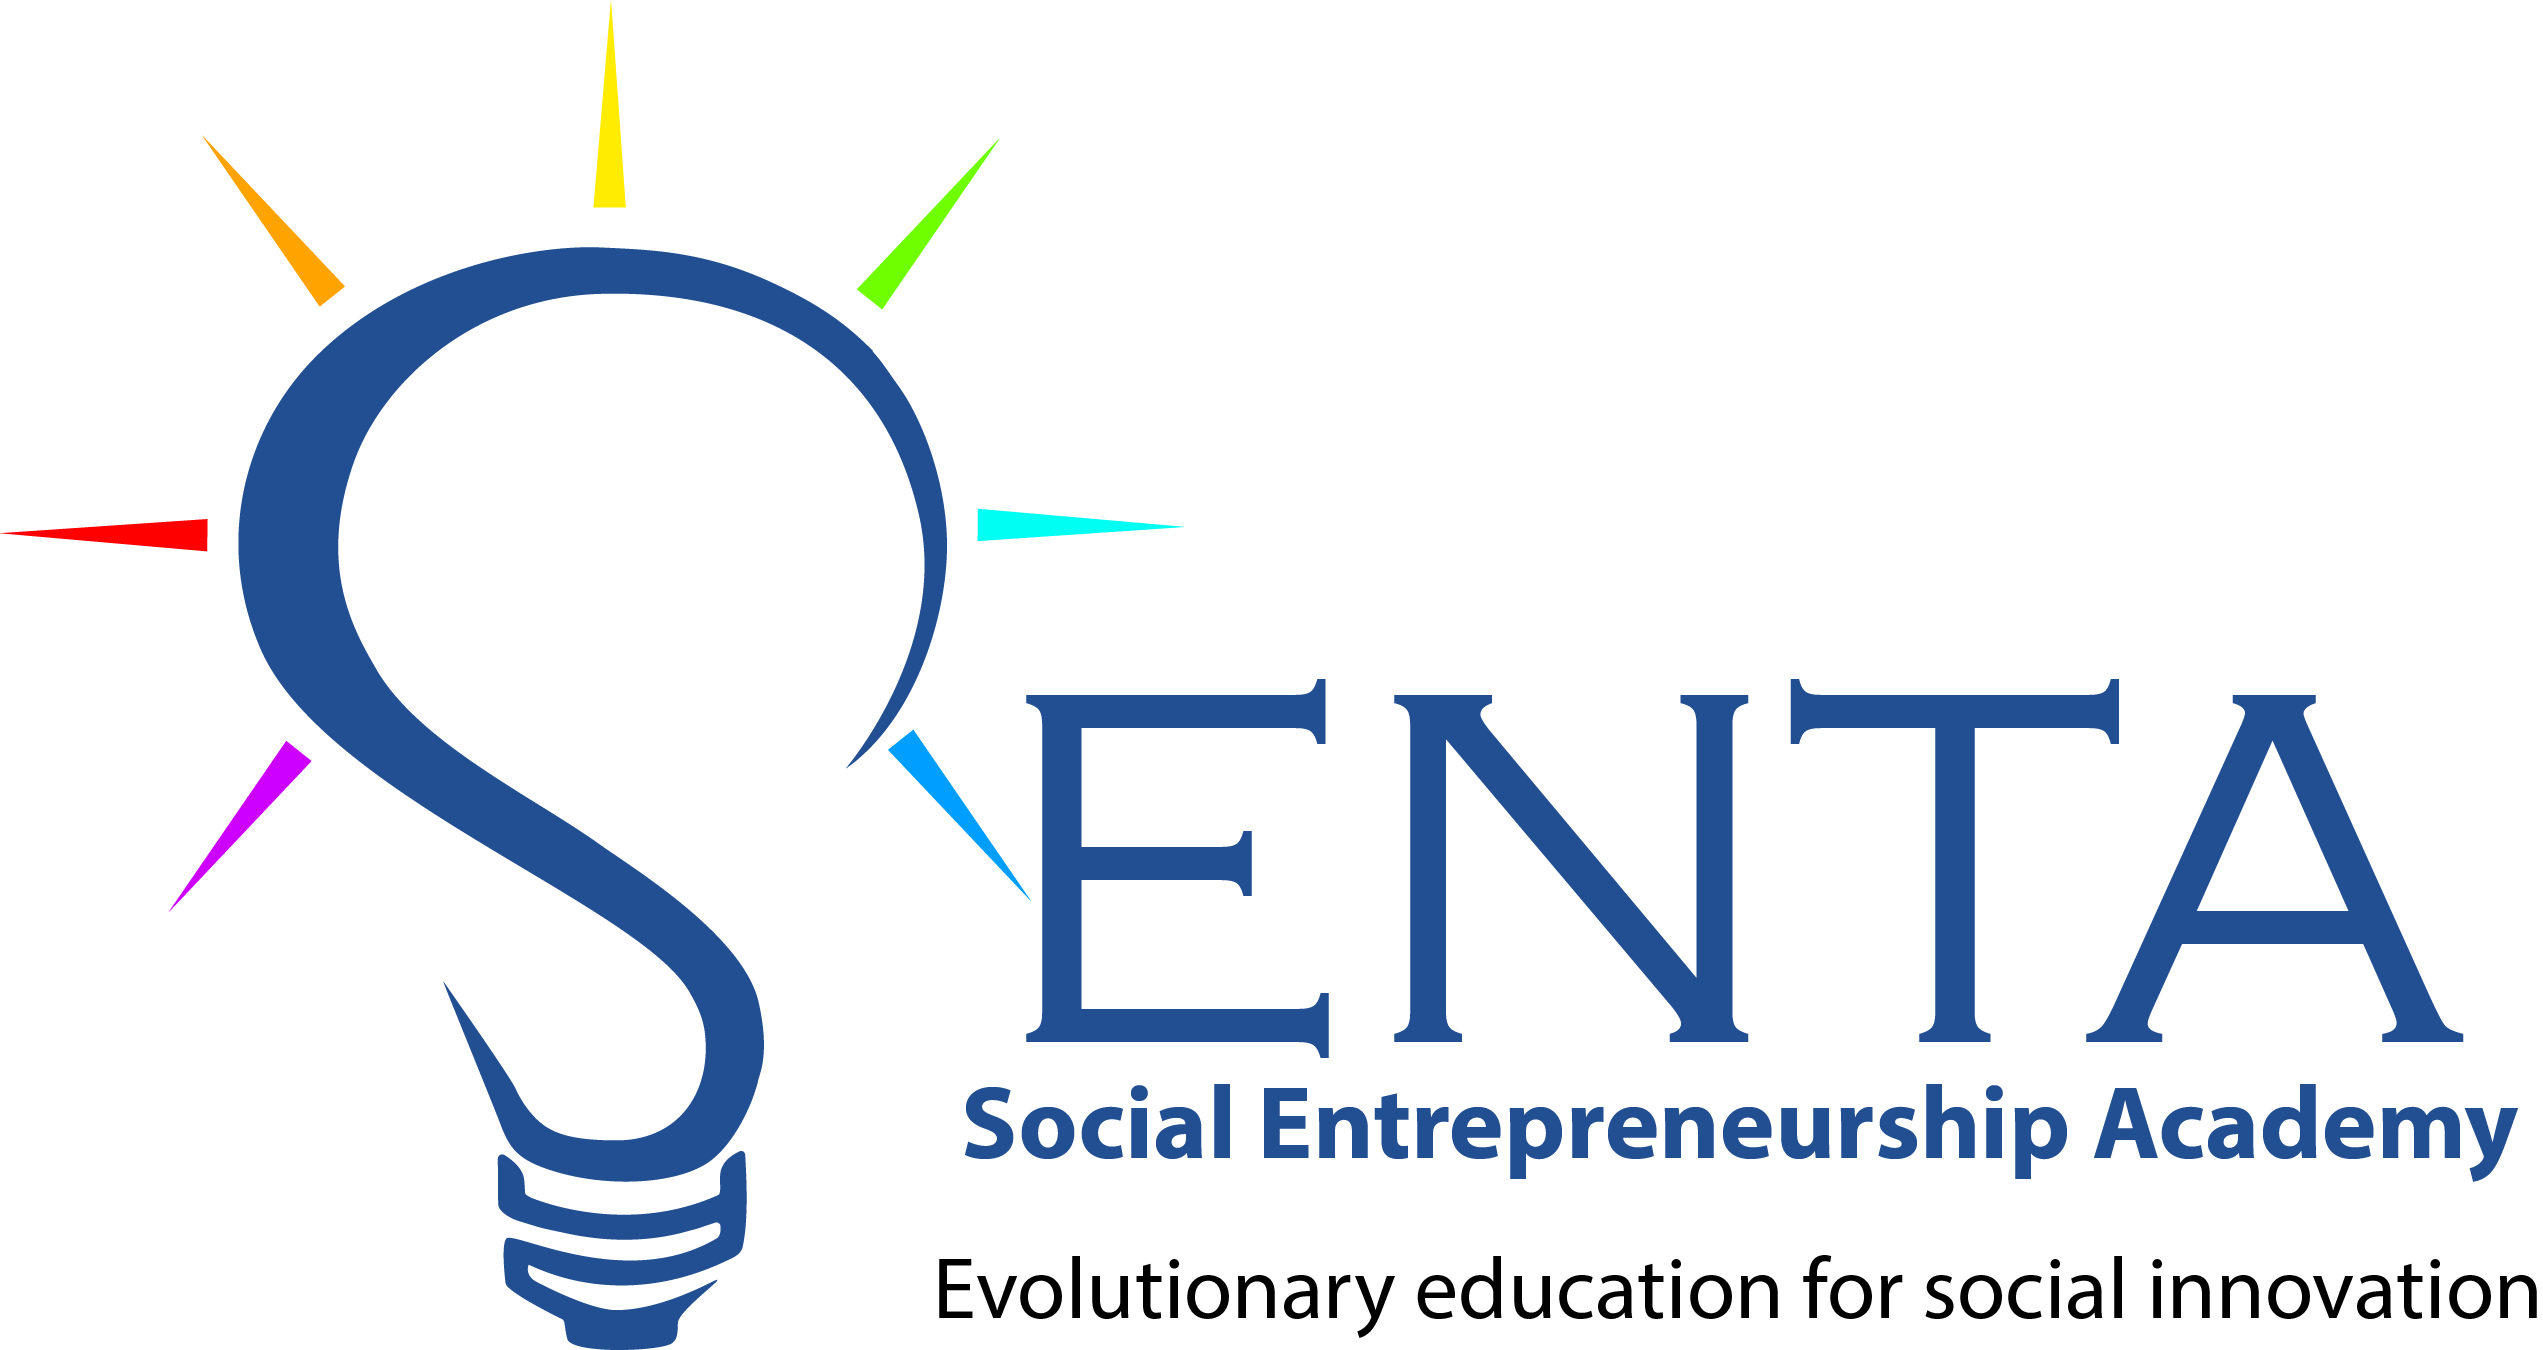 Social Entrepreneurship Academy – SENTA